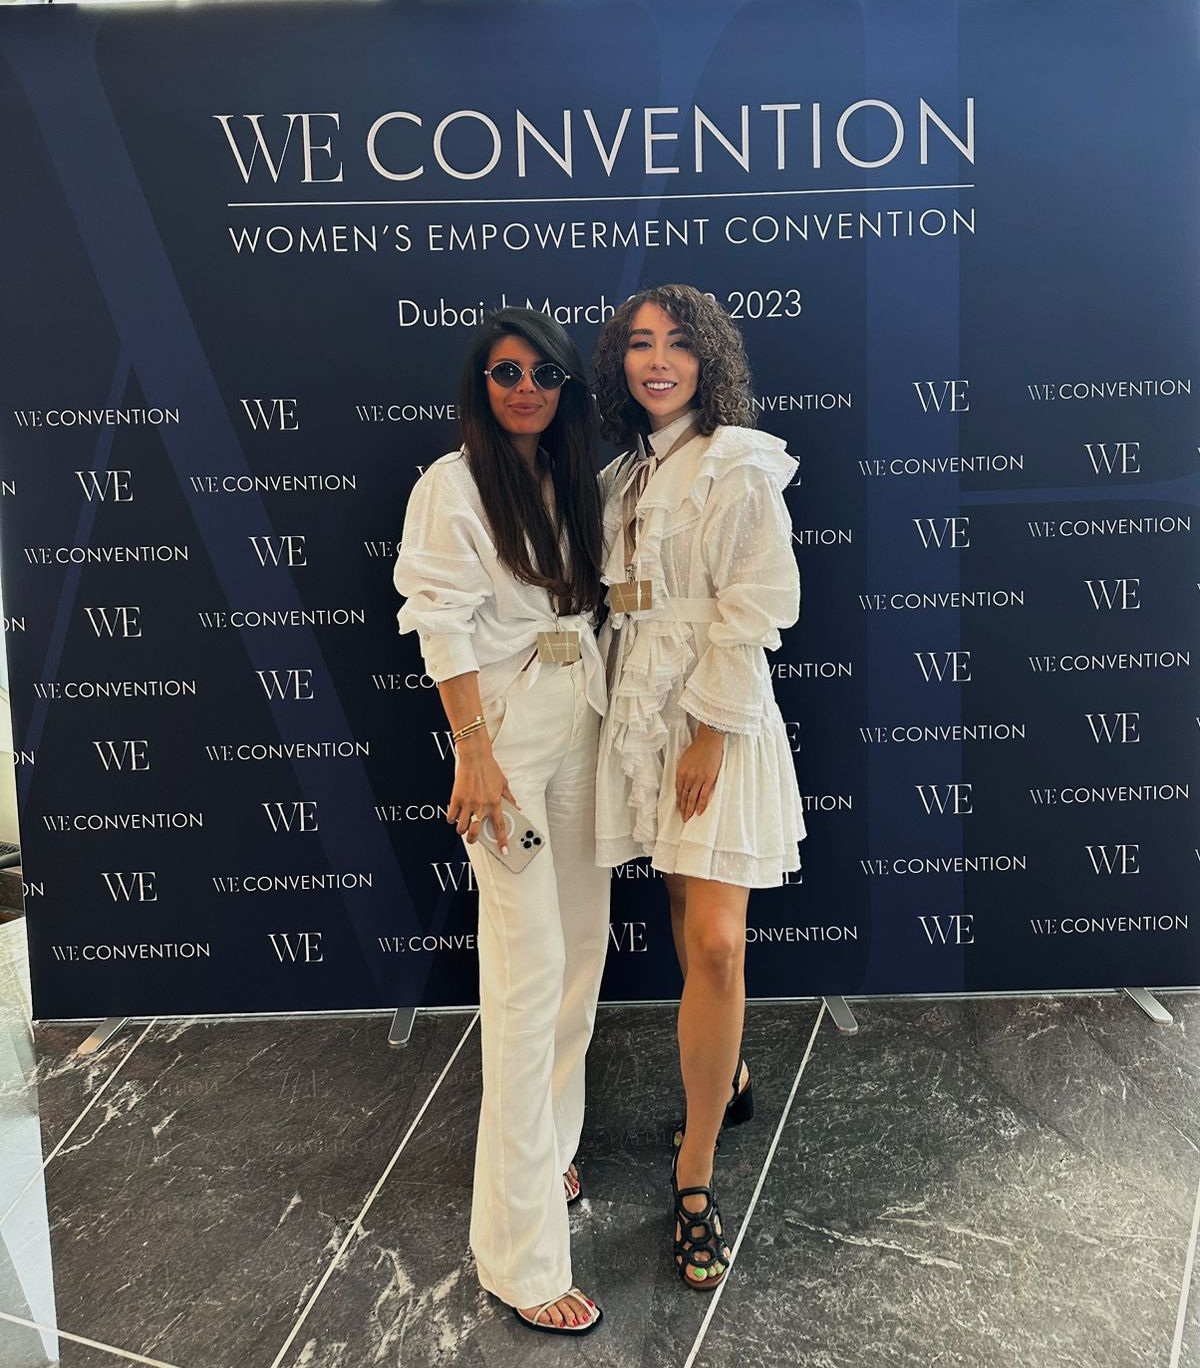 Конференция WE Convention Dubai, где одними из спикеров были Наталья Водянова и Мэй Маск (мама Илона Маска)